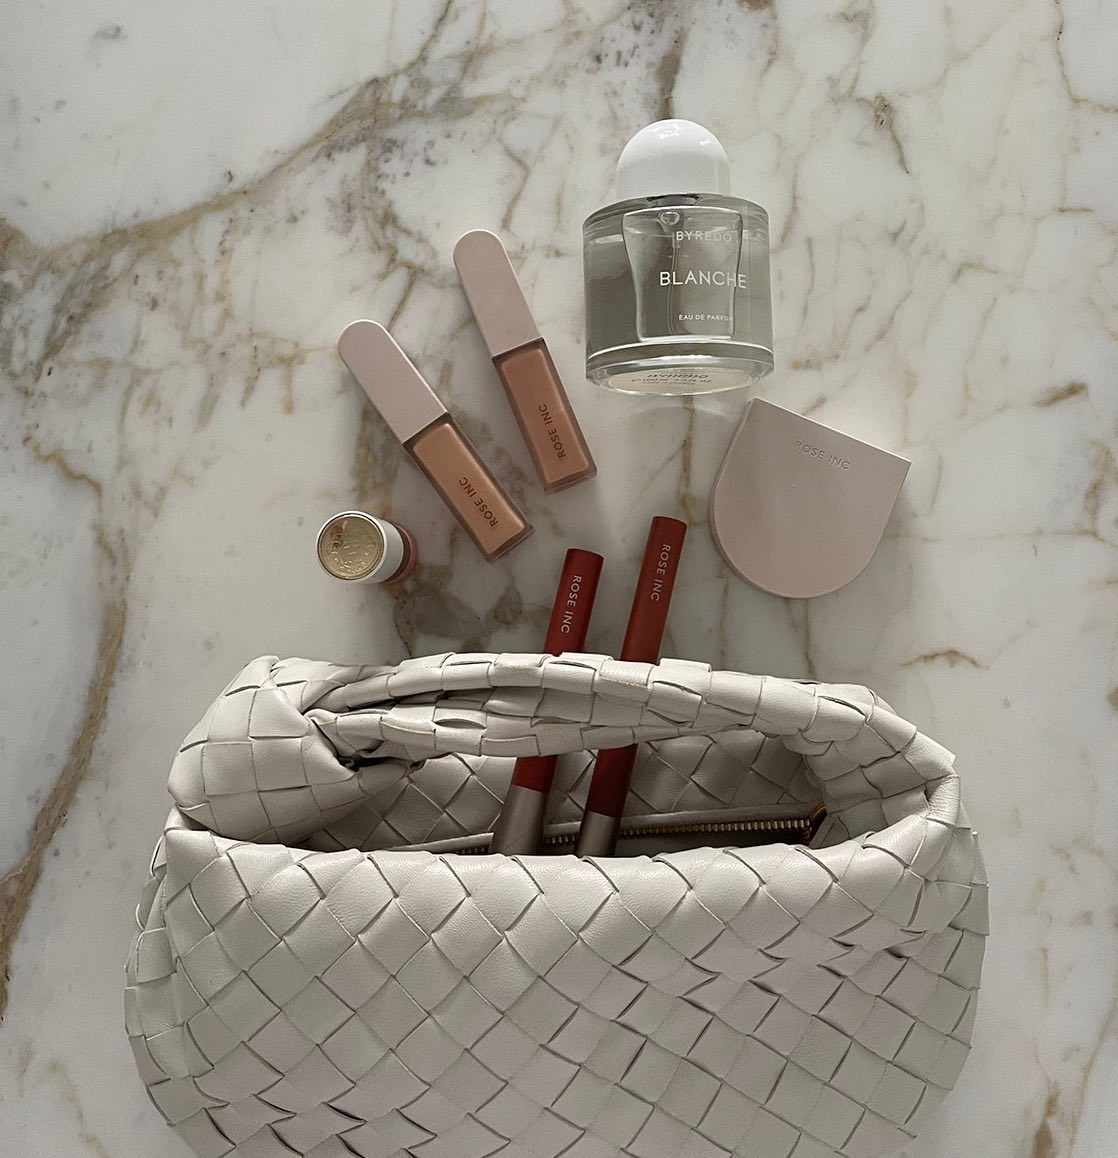 Bottega bag with makeup products inside